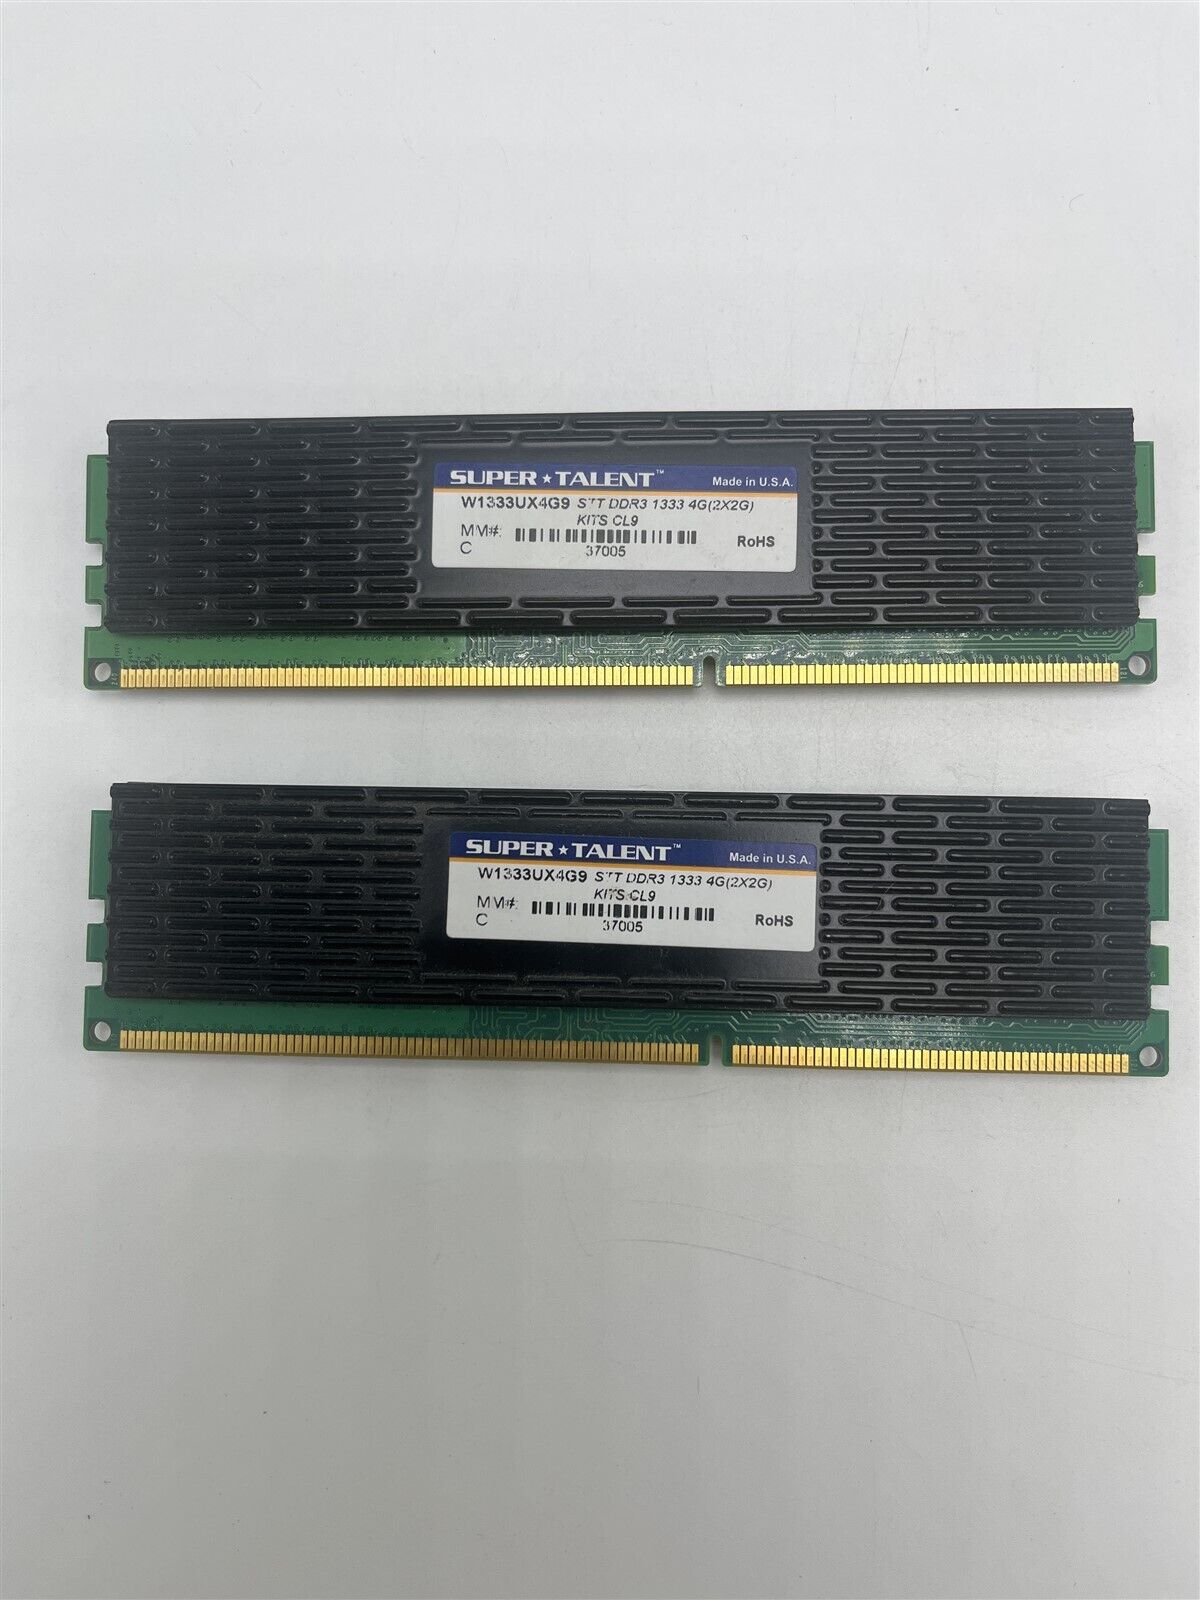 Super Talent 4GB DDR3-1333 CL9 With Heatsink RAM